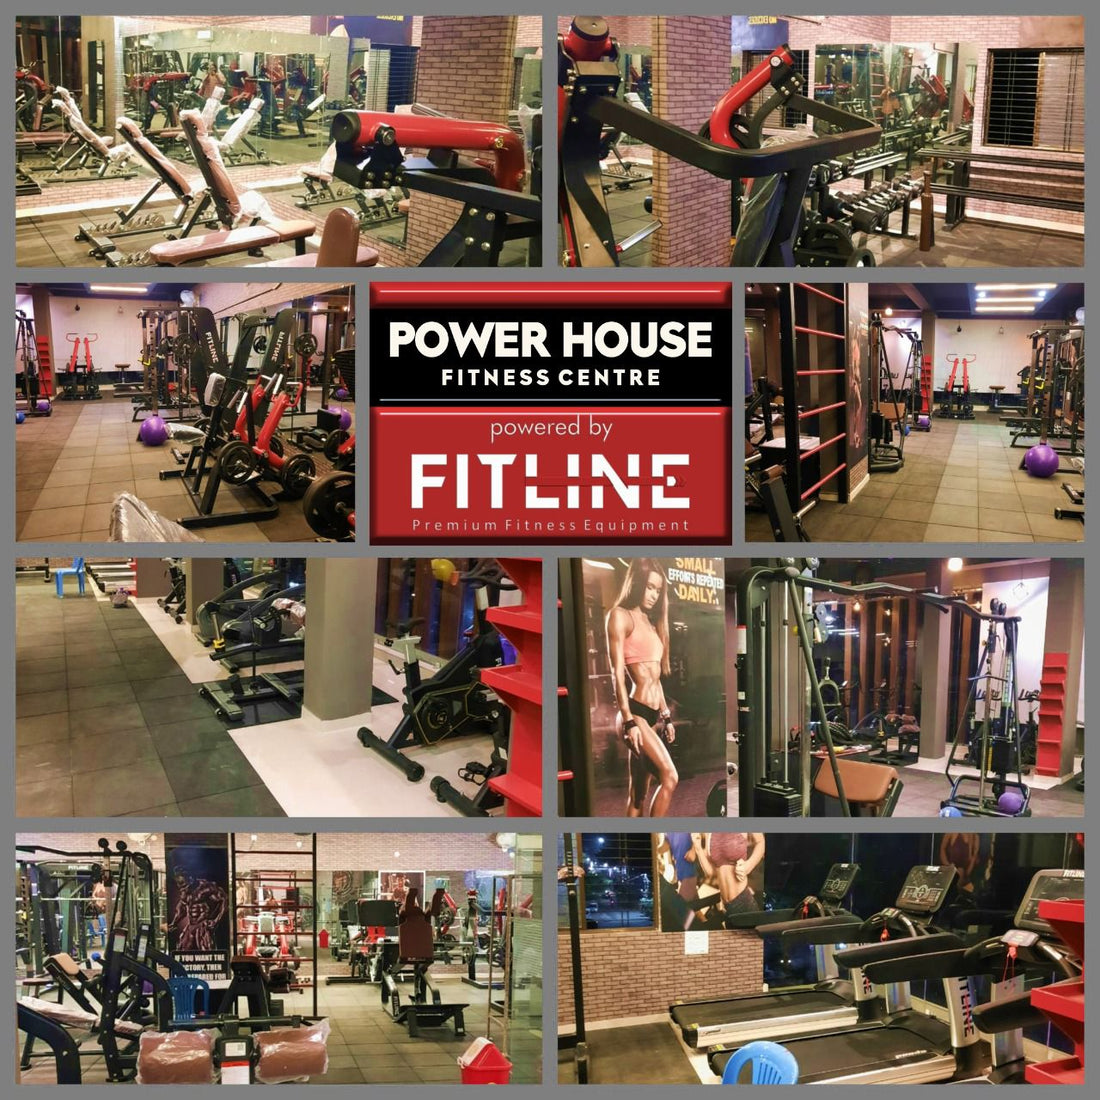 Power House Fitness Center